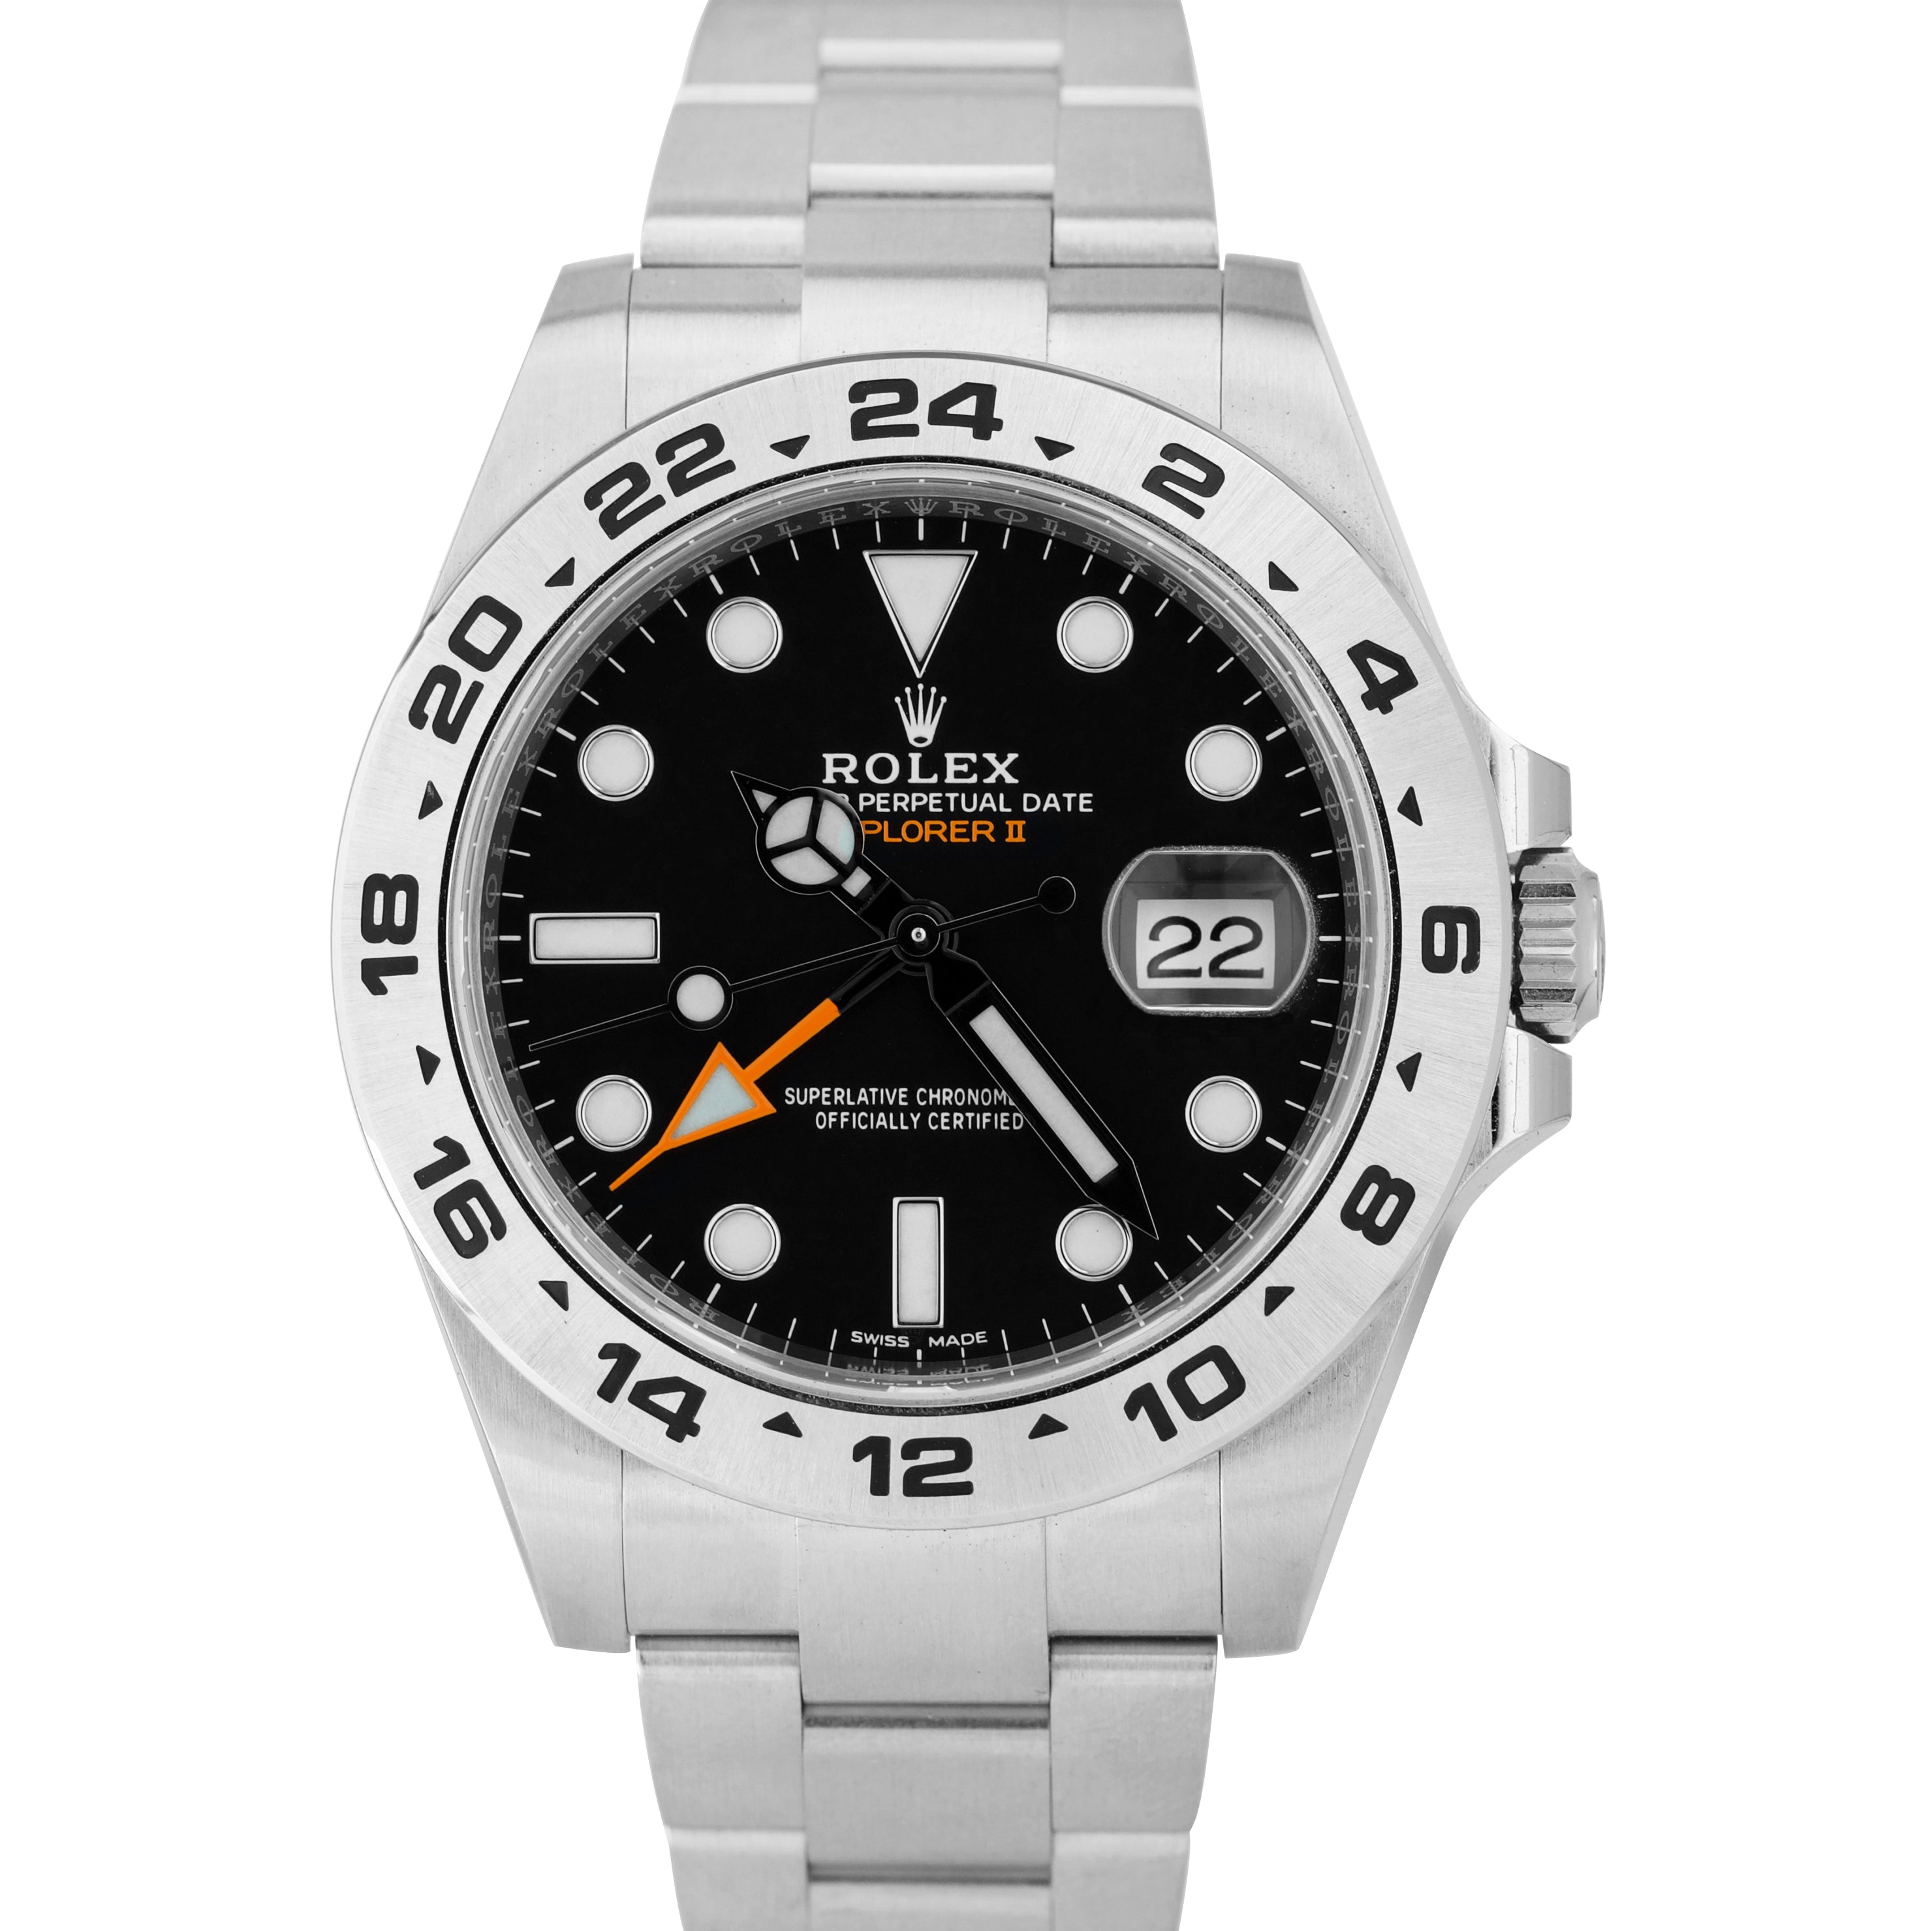 BRAND NEW DEC 2020 Rolex Explorer II 42mm Black Orange GMT Date Watch 216570